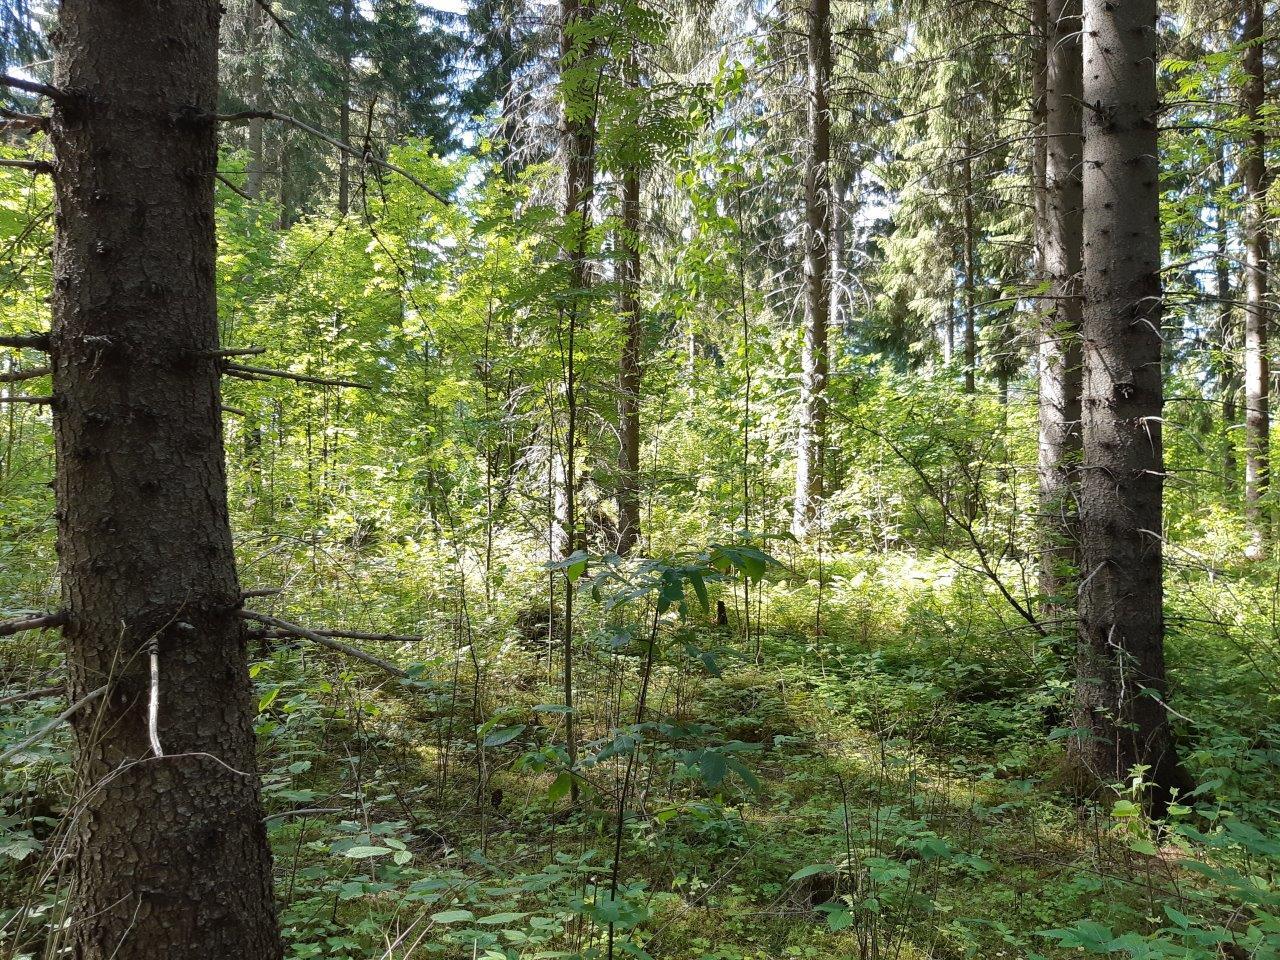 Metsää jossa kasvaa varttuneita kuusia ja nuoria pihlajia.